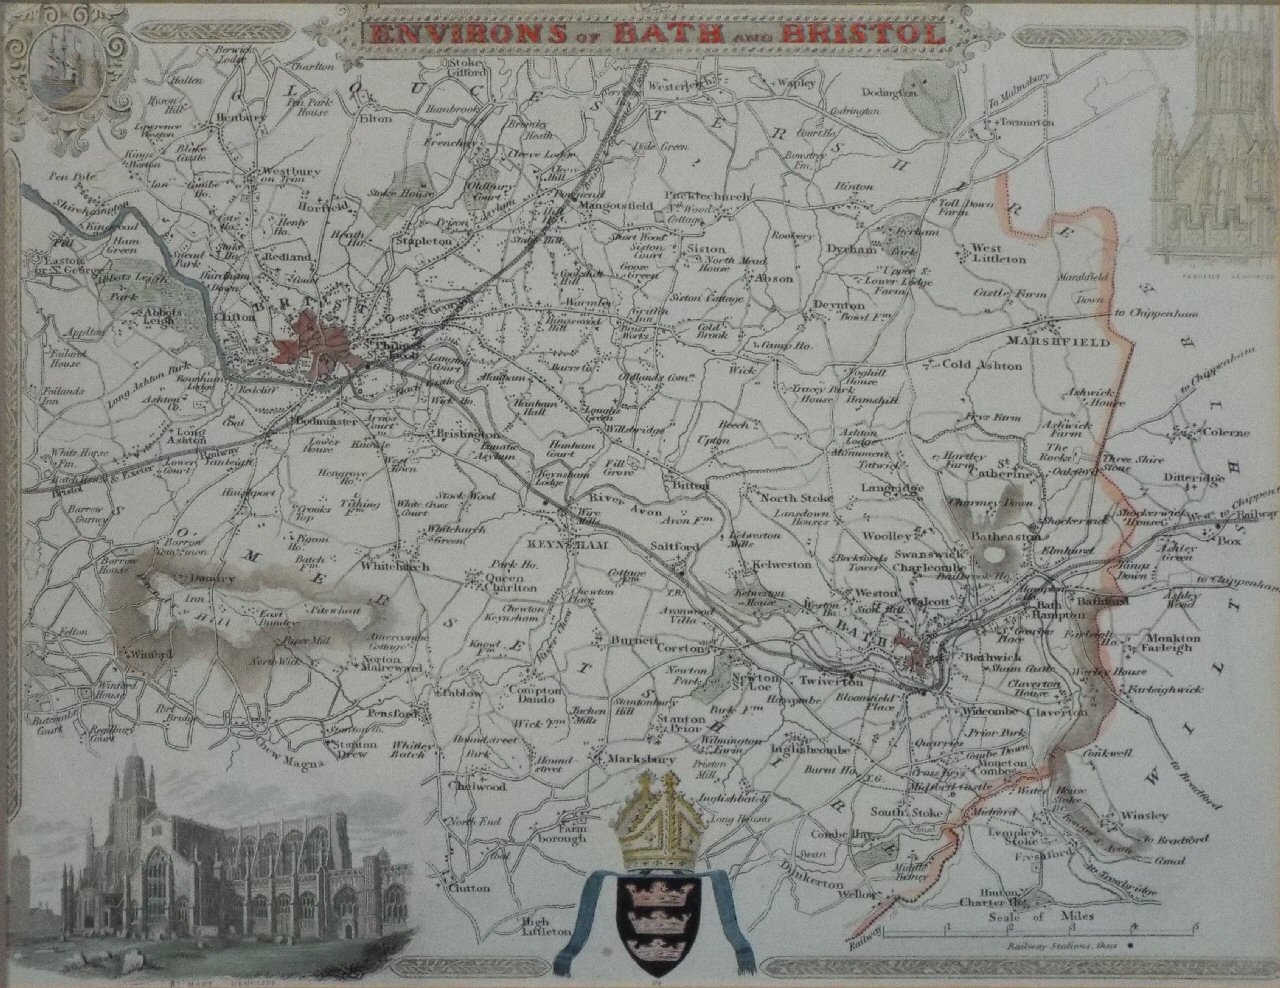 Map of Bath